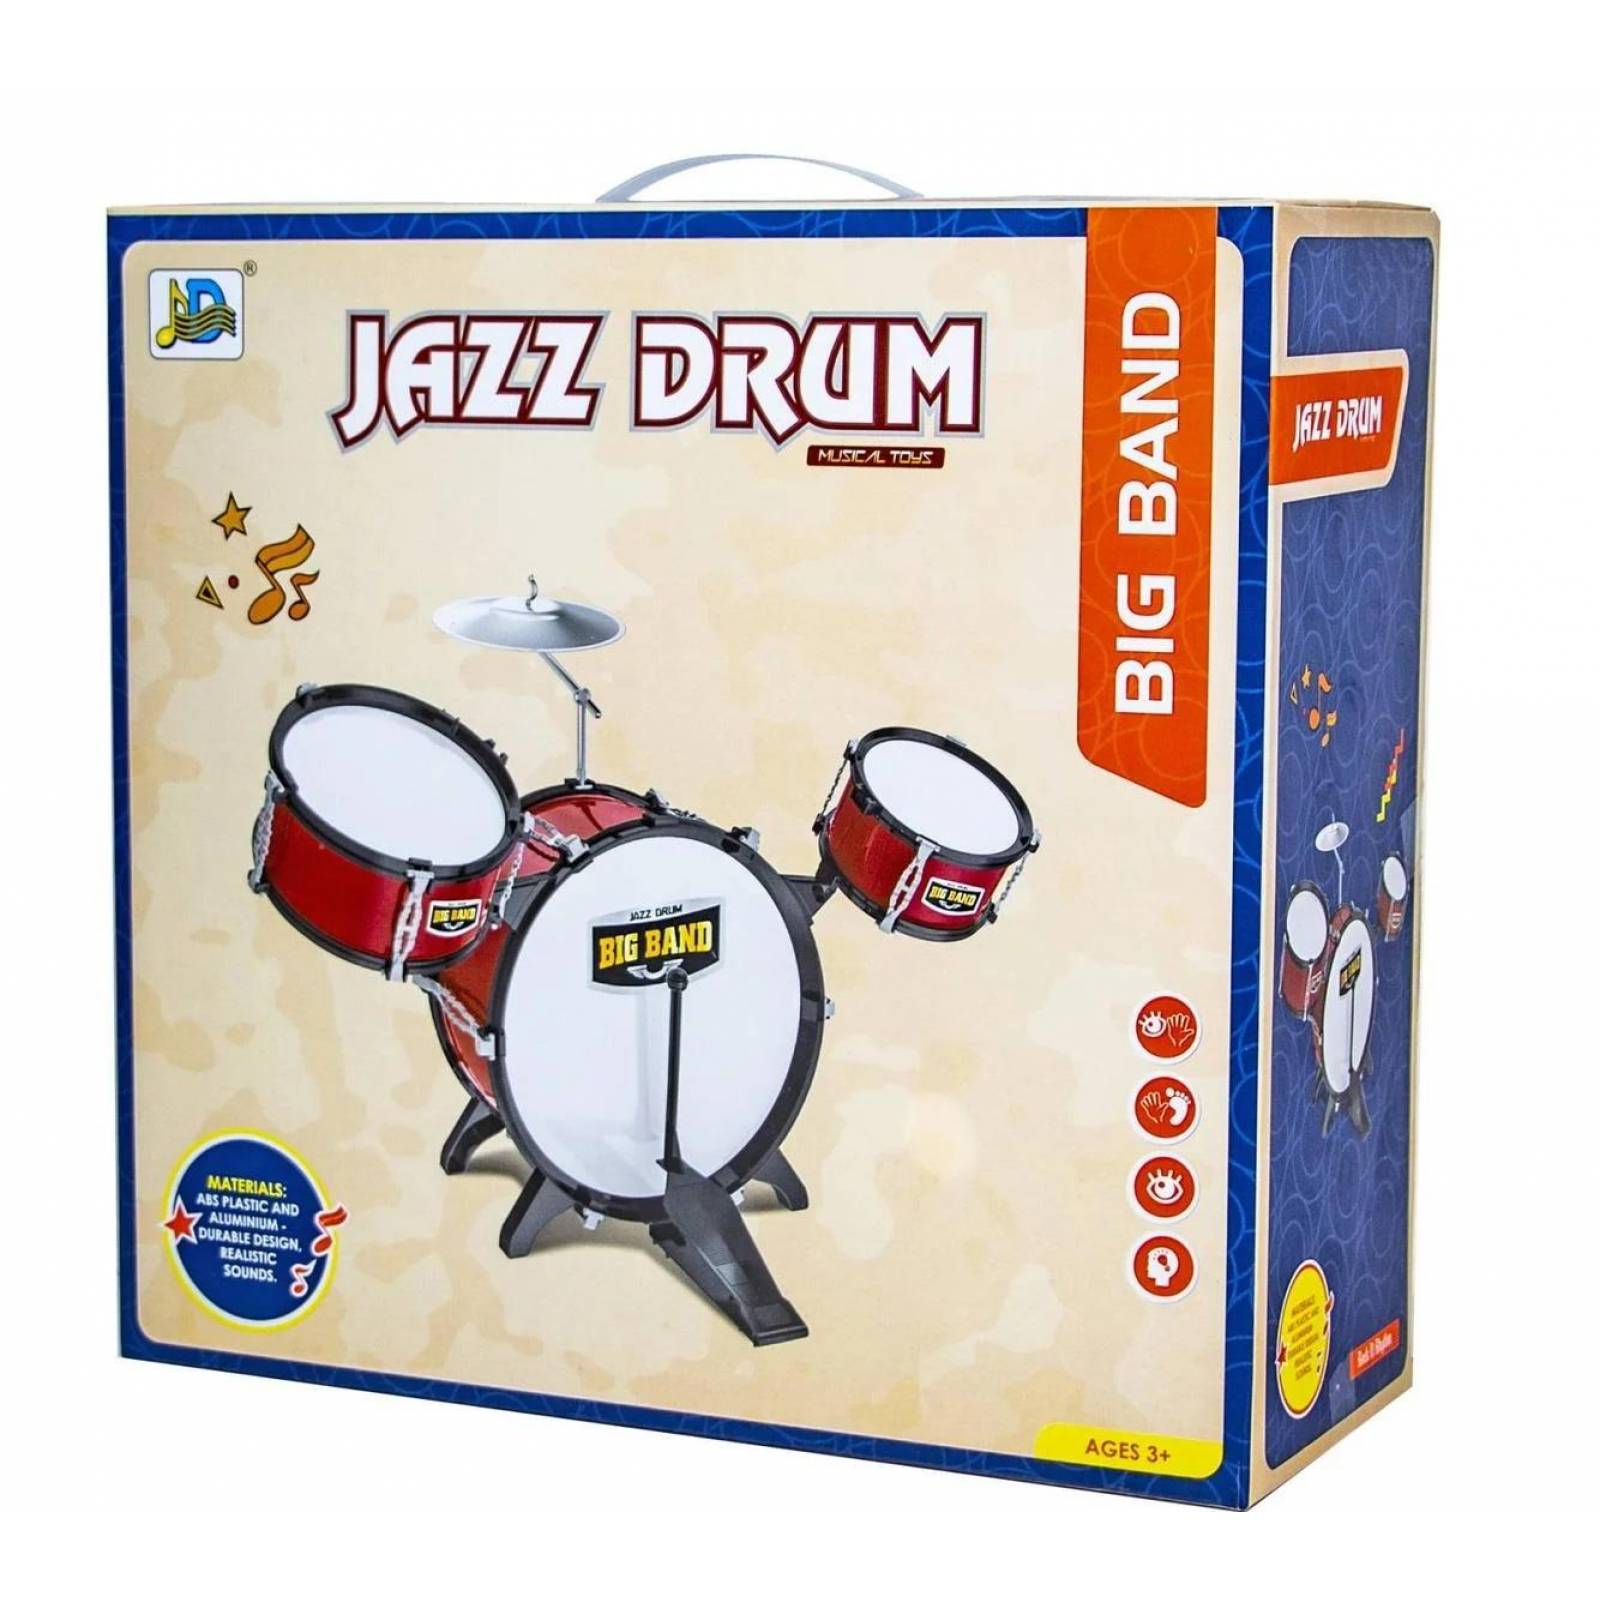 Batería Musical Infantil, 7 piezas, Jazz Drum,Banquillo,juguete  - Negro